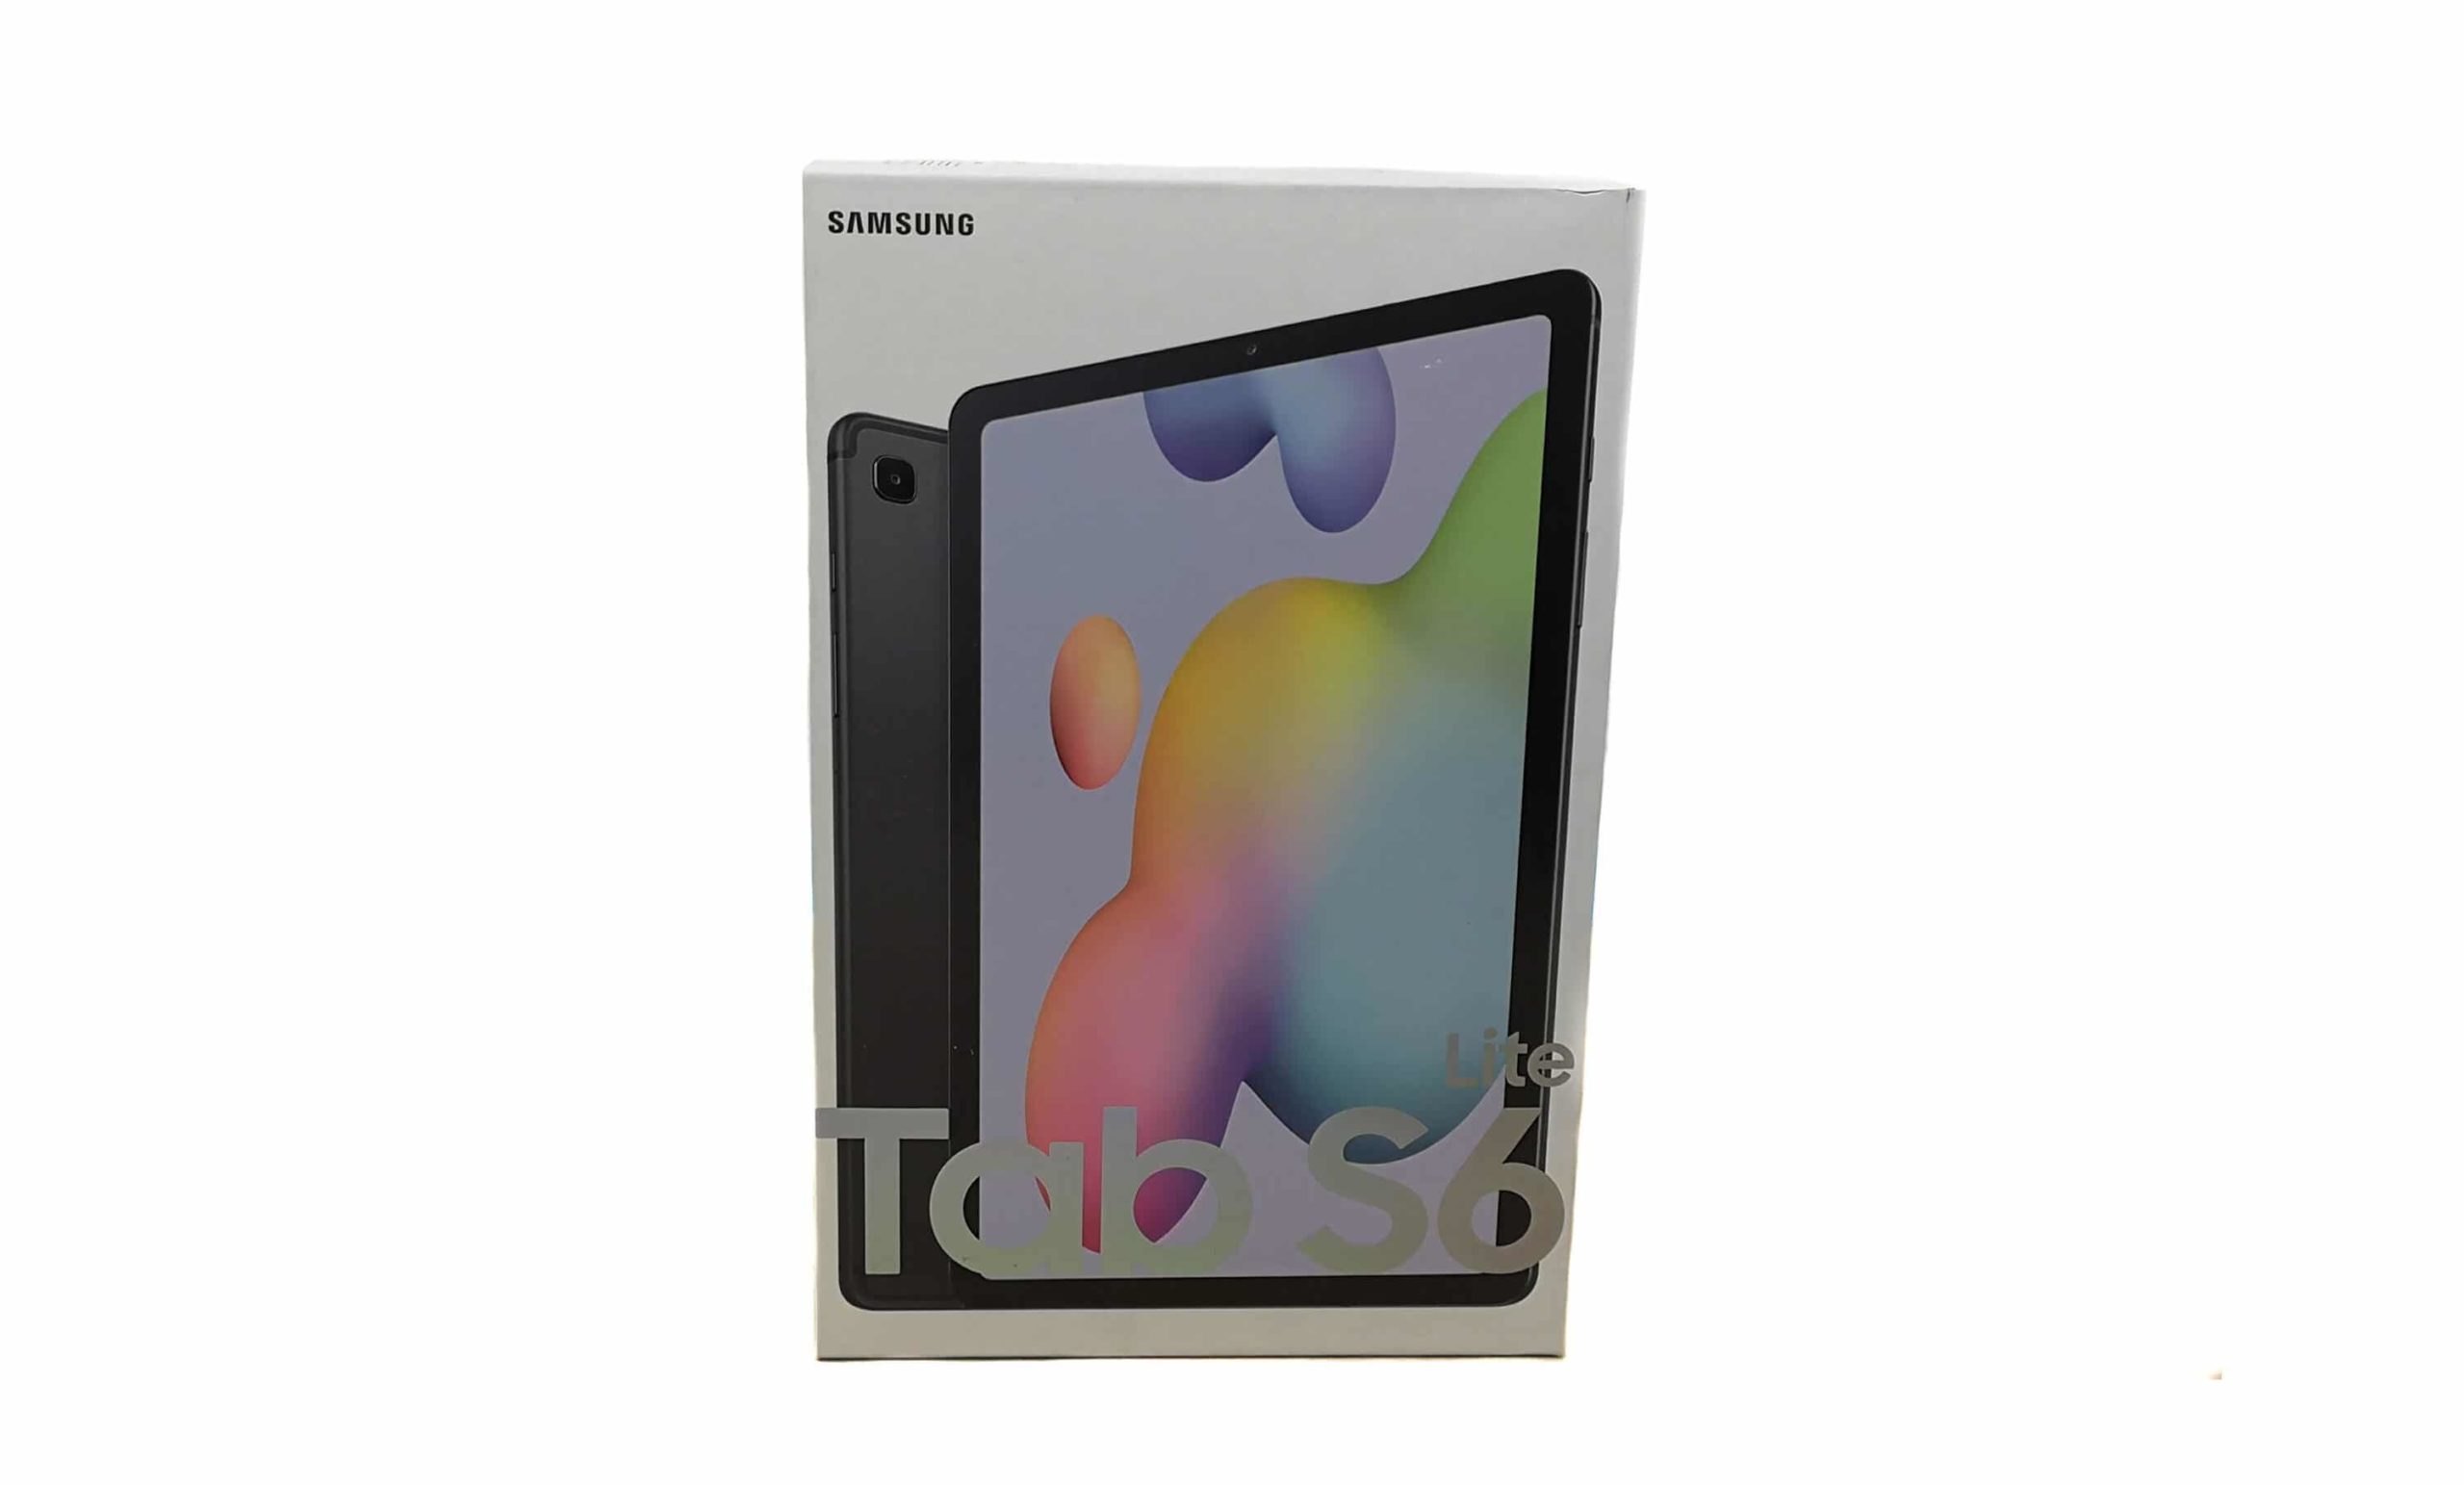 Galaxy Tab S6 : une tablette avec un stylet et un capteur d